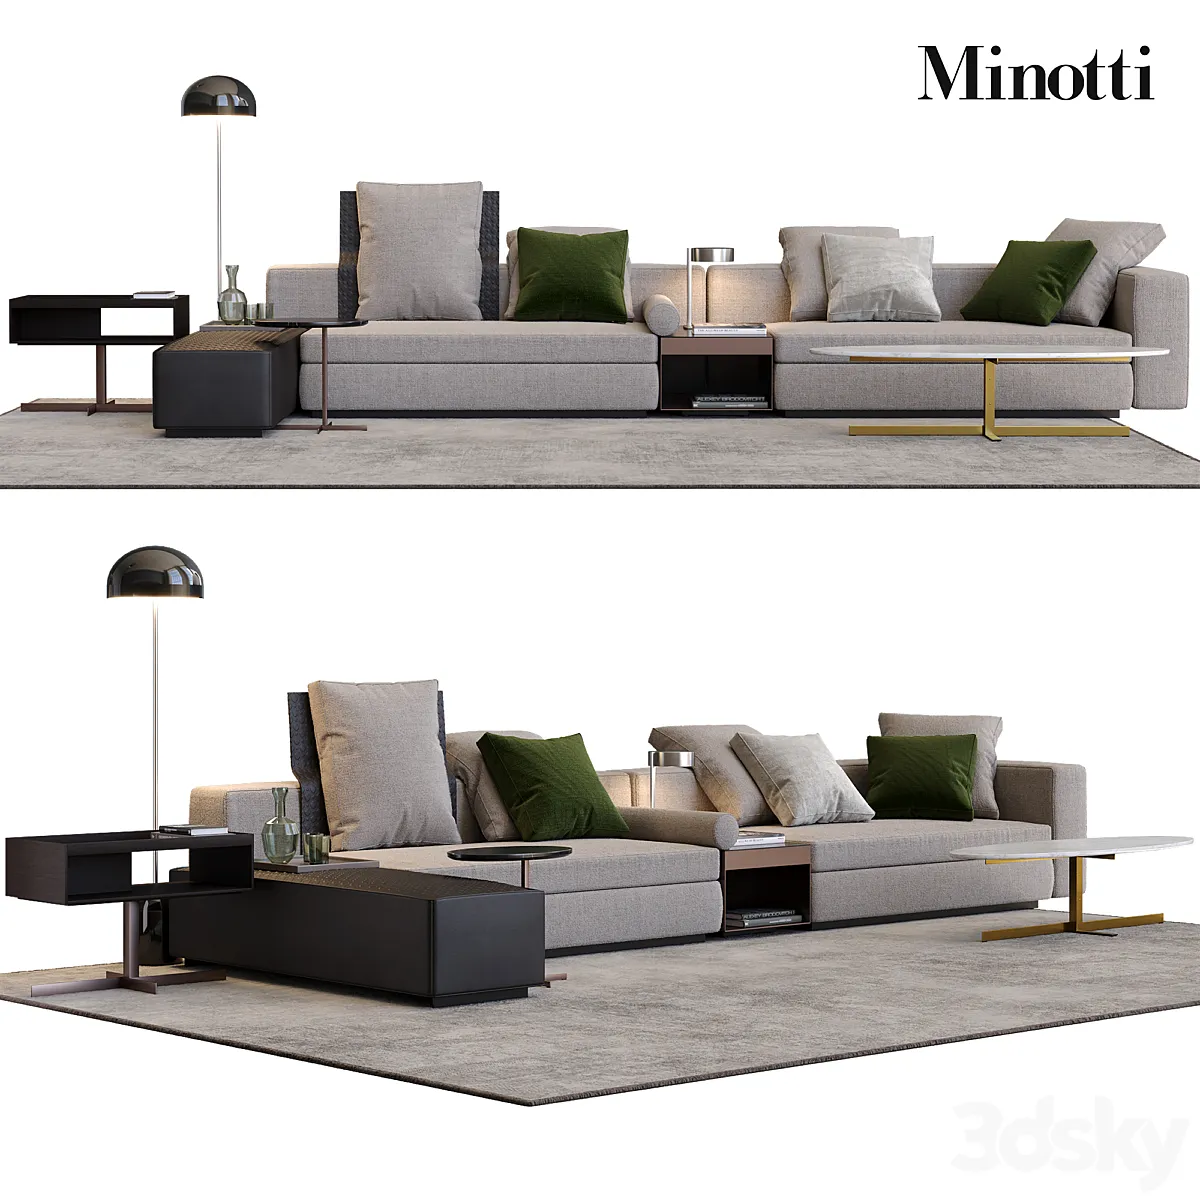 Minotti Yang - Sofa - 3D model